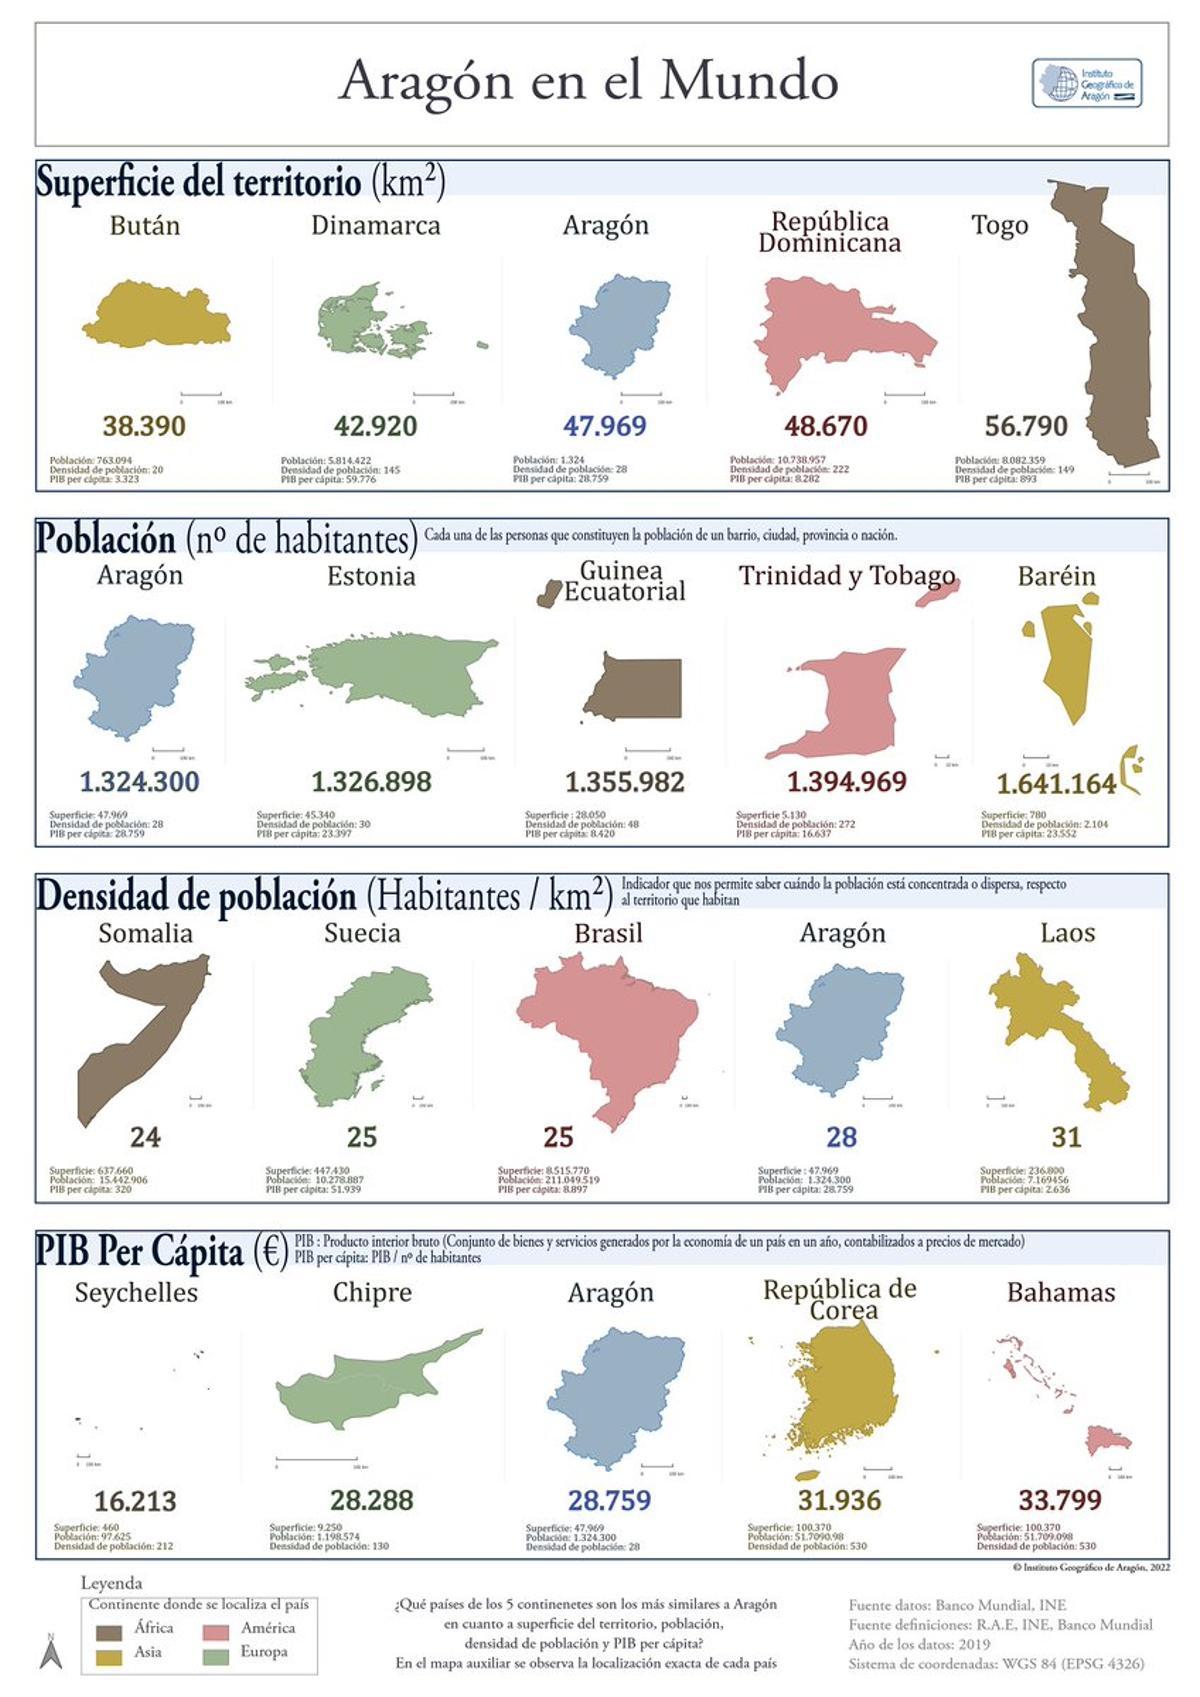 Mapa del Instituto Geográfico de Aragón en donde se compara a la comunidad con el resto del mundo